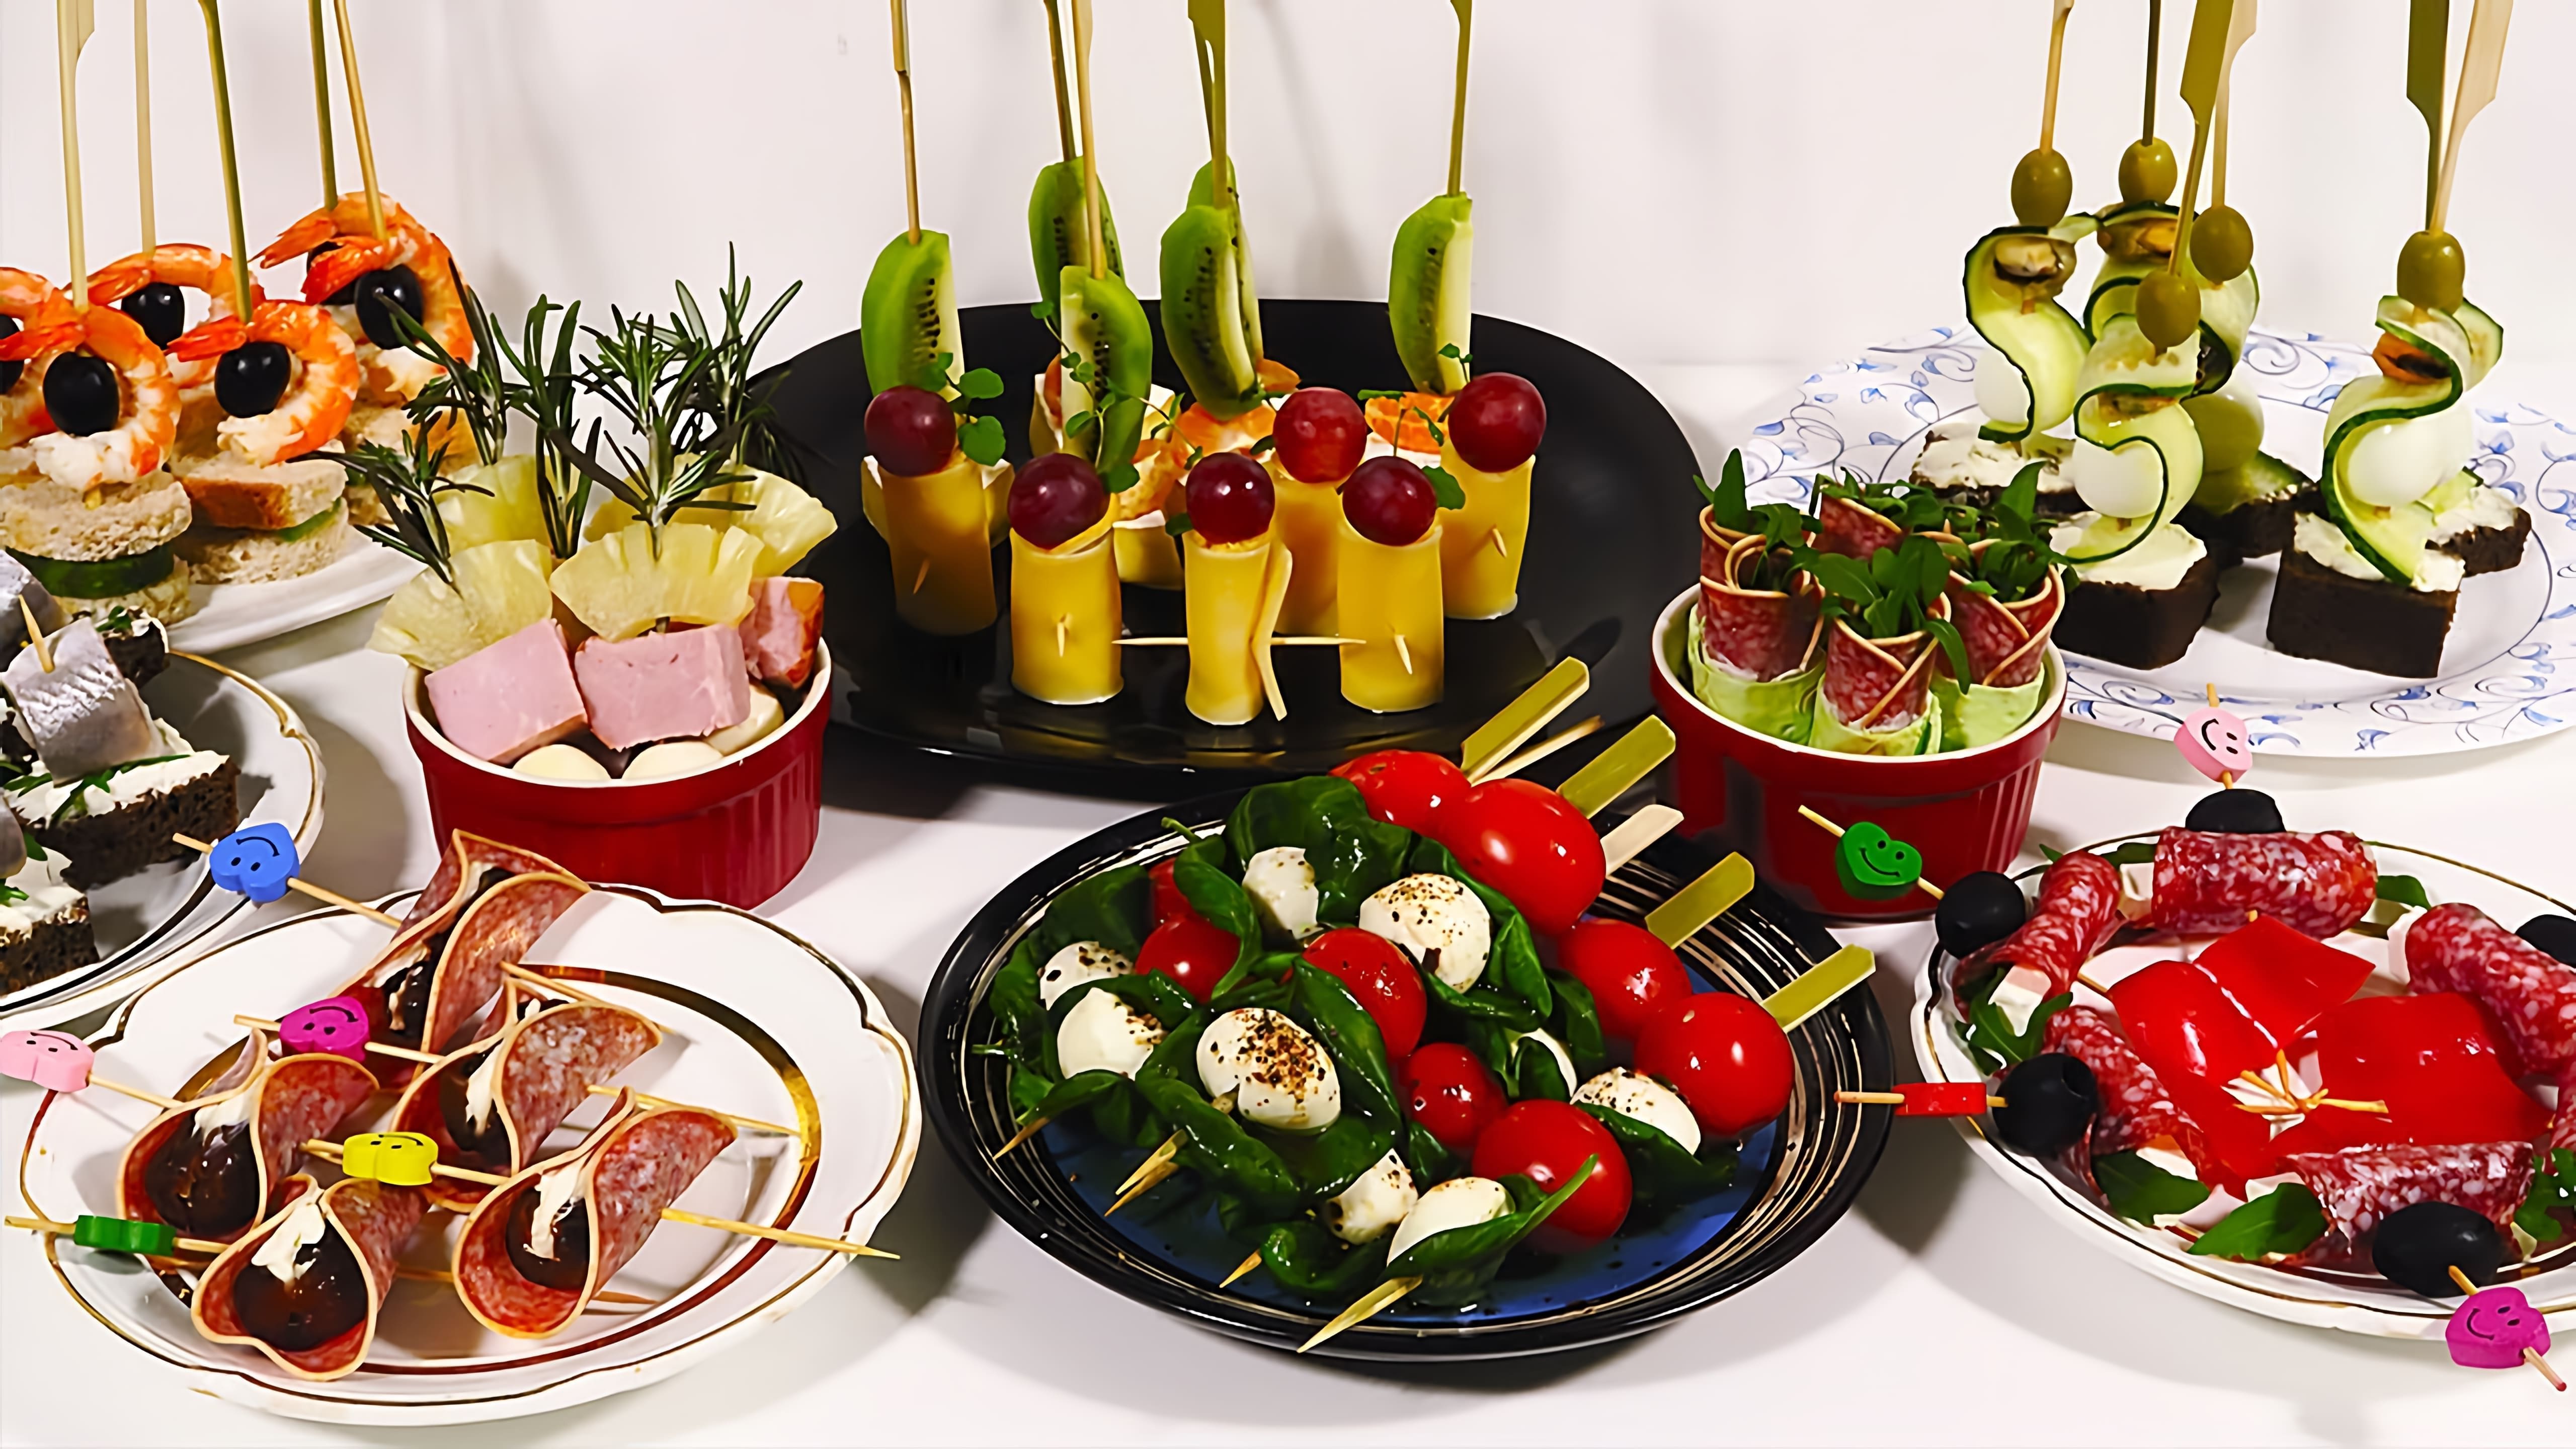 Видео рецепты для 10 различных видов закусок, которые могут быть поданы на праздничном столе